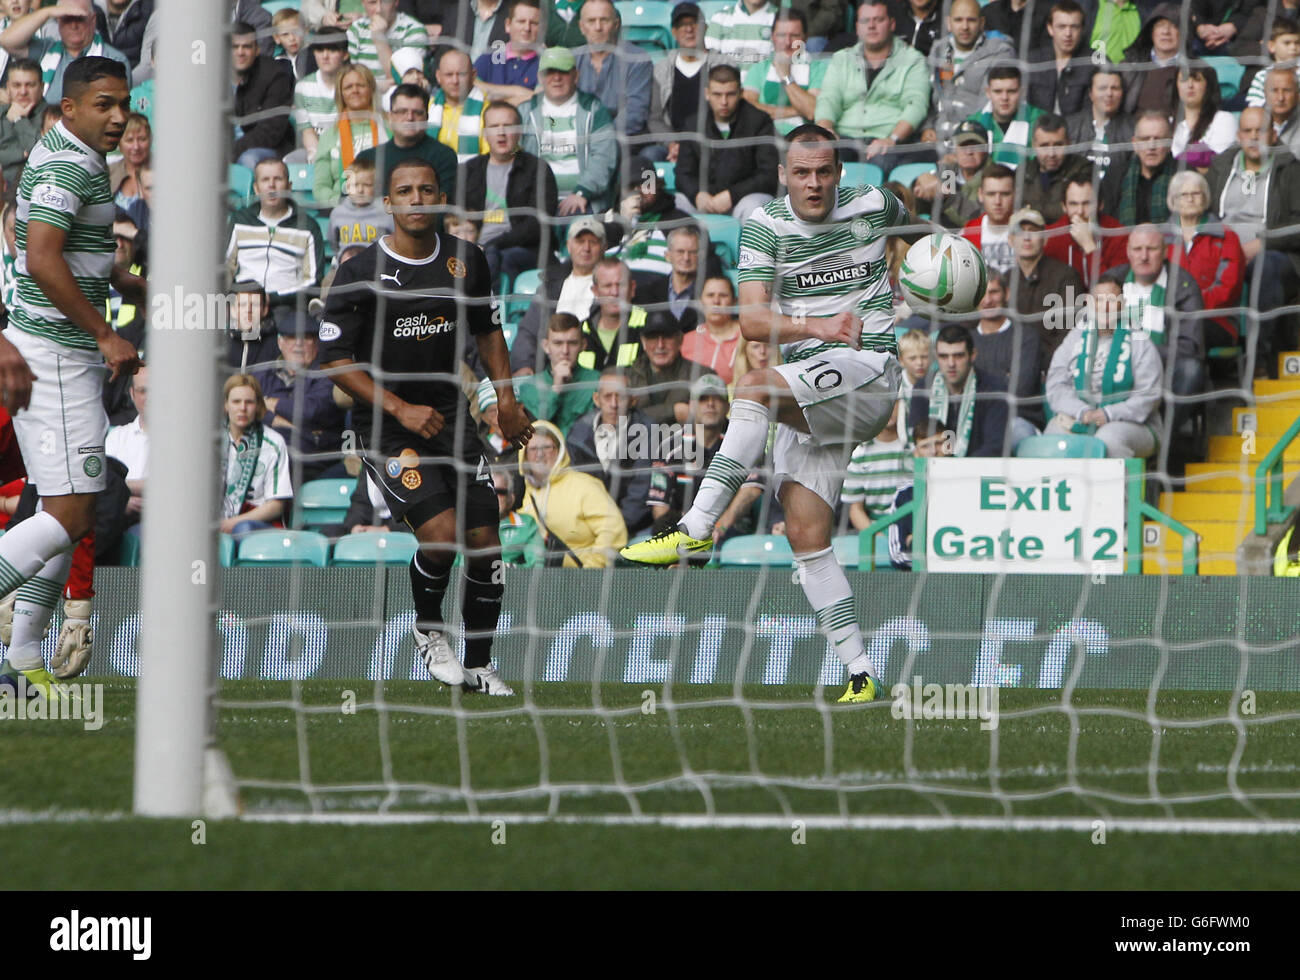 Anthony Stokes, du Celtic, marque un but lors du match Scottish Premiership au Celtic Park, à Glasgow. Banque D'Images